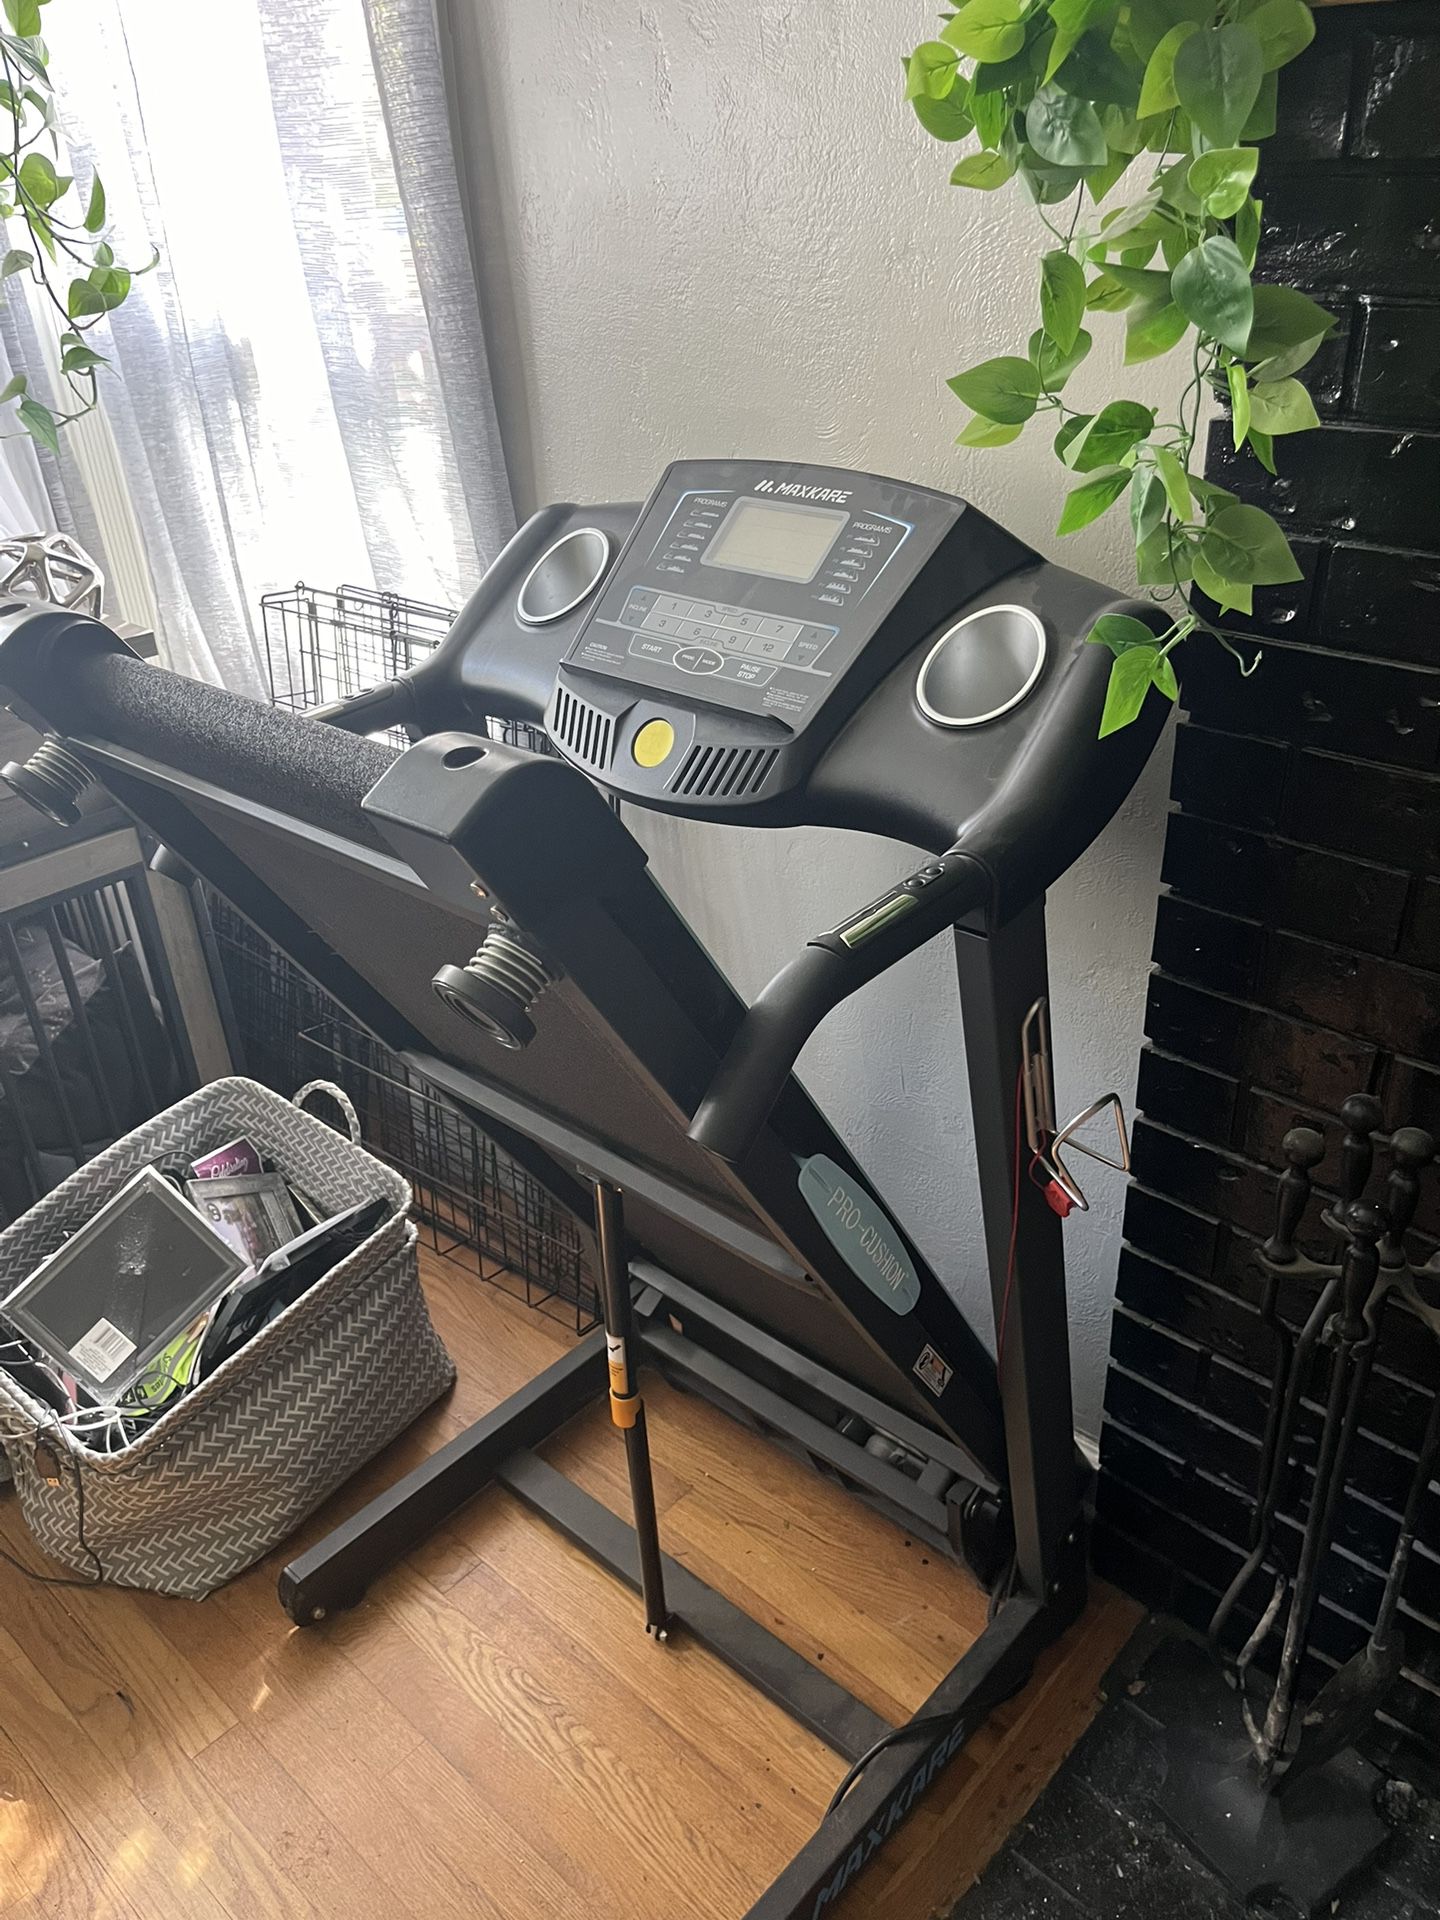 Portable Easy To Fold Treadmill